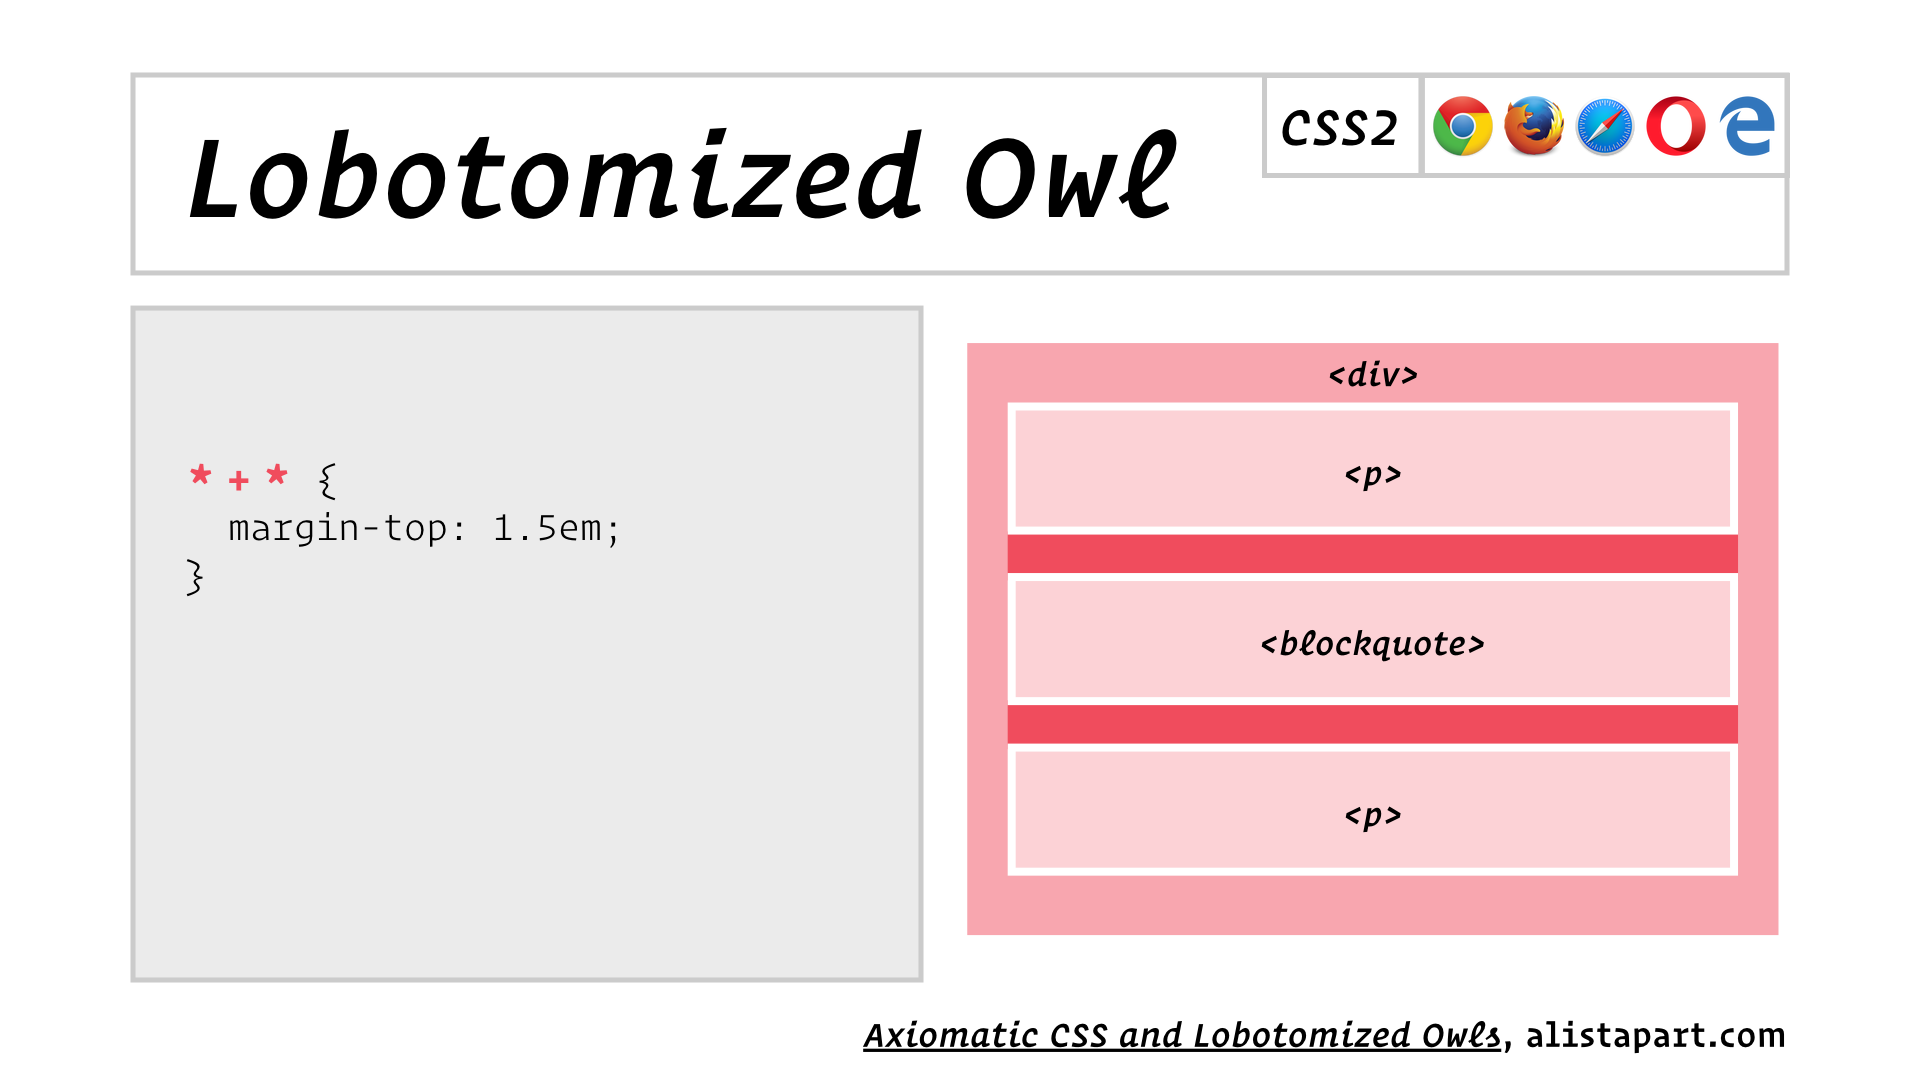 slide: Lobotomized Owl * + * { margin-top: 1.5em; }